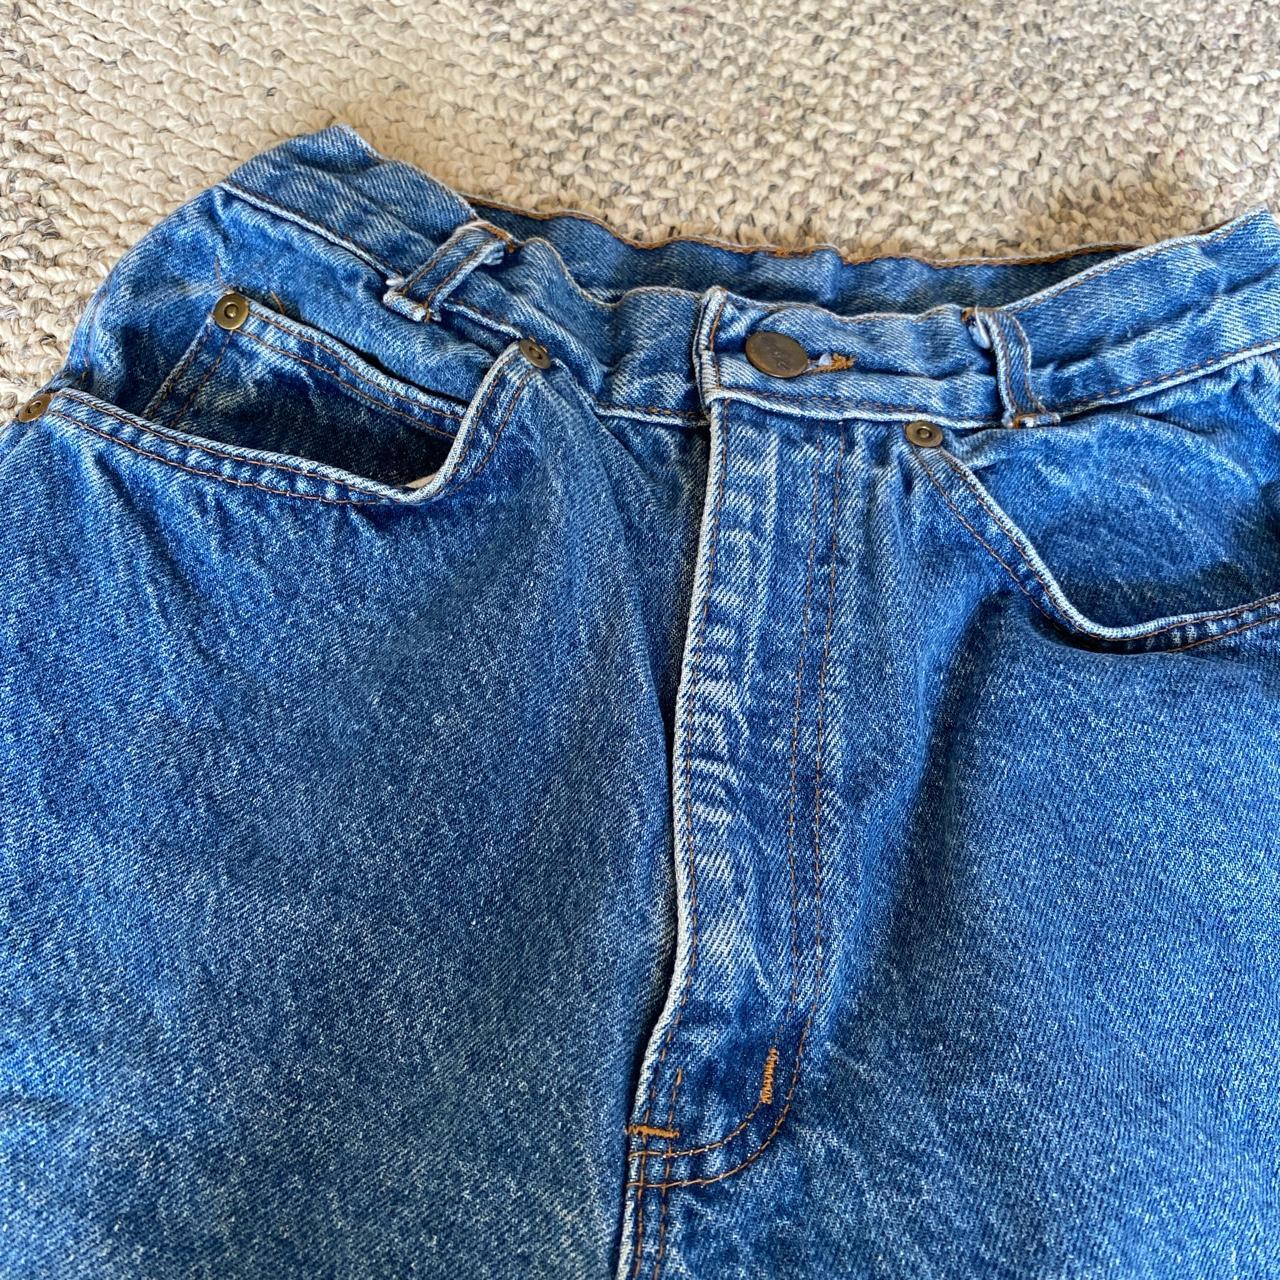 Vintage 80’s chic jeans 👖 Waist 24” Rise 11.5” Hip... - Depop